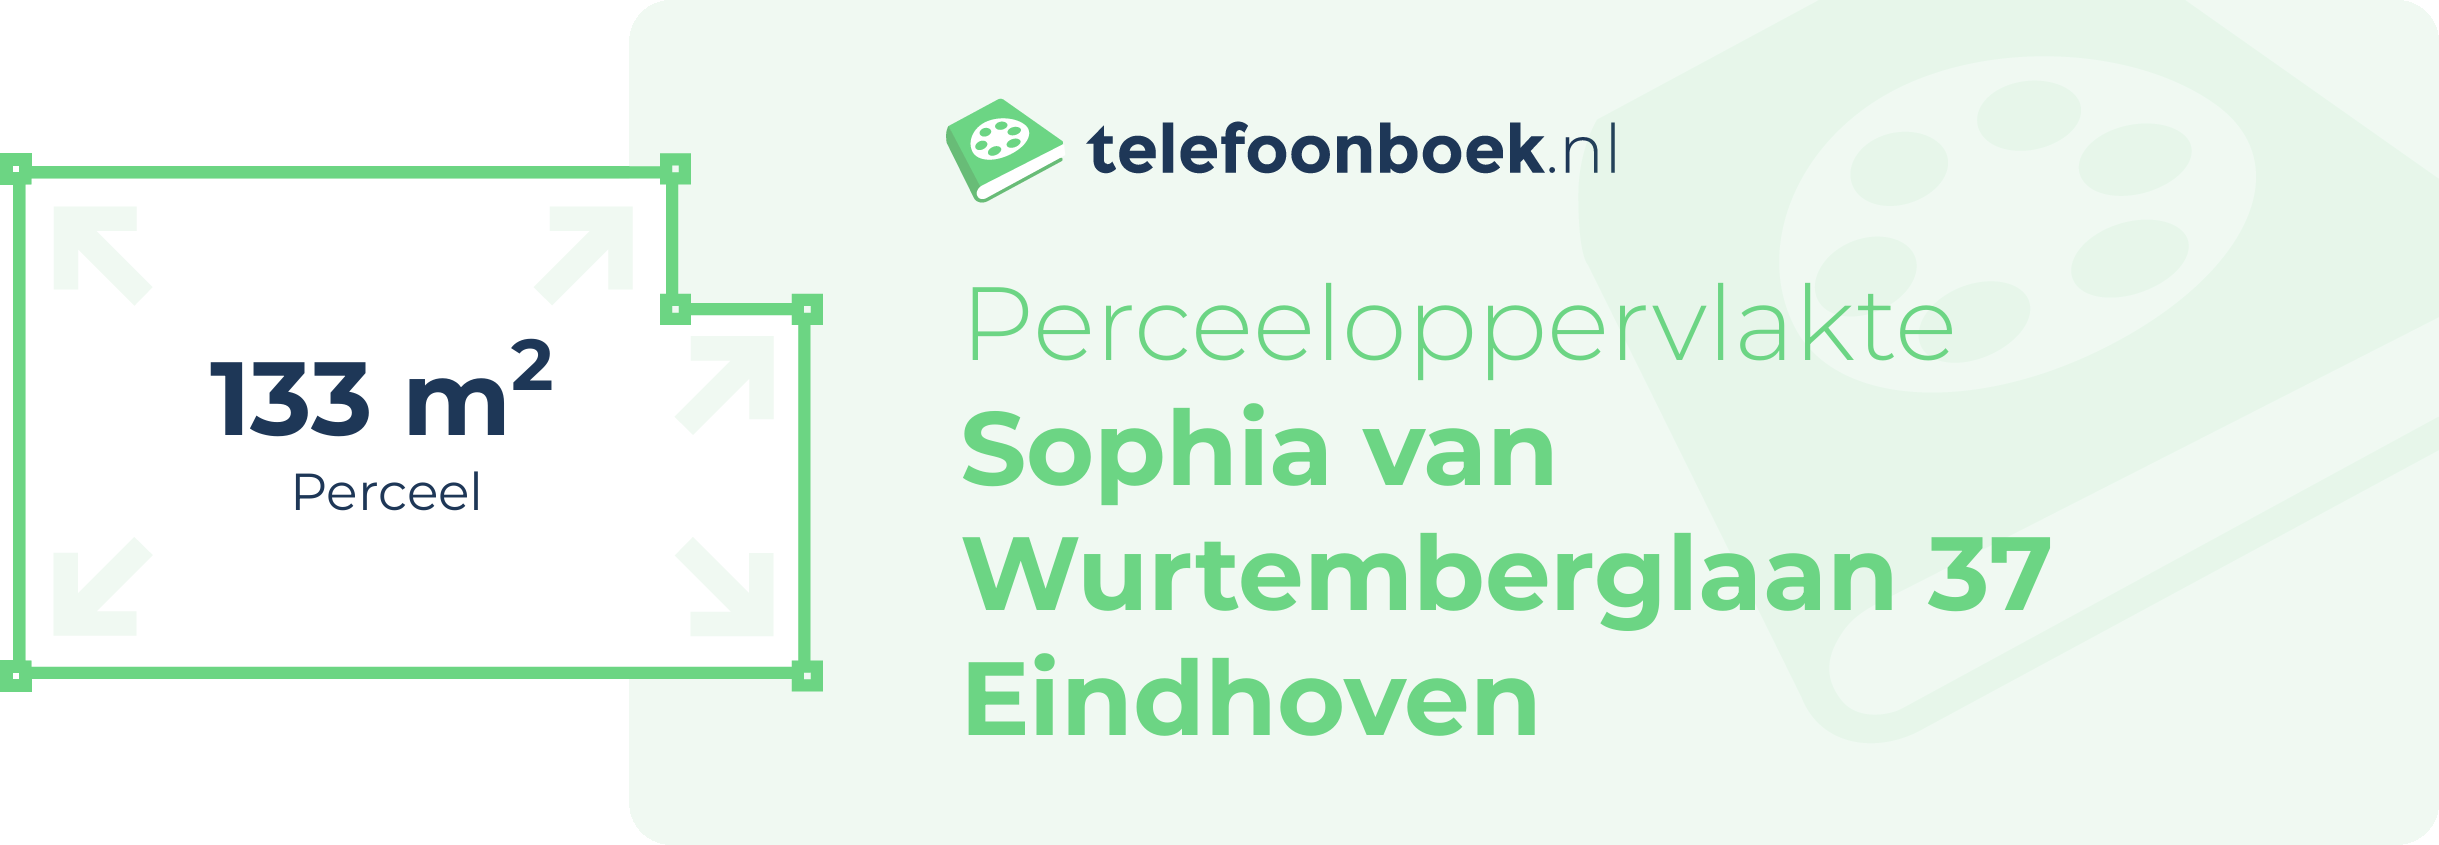 Perceeloppervlakte Sophia Van Wurtemberglaan 37 Eindhoven